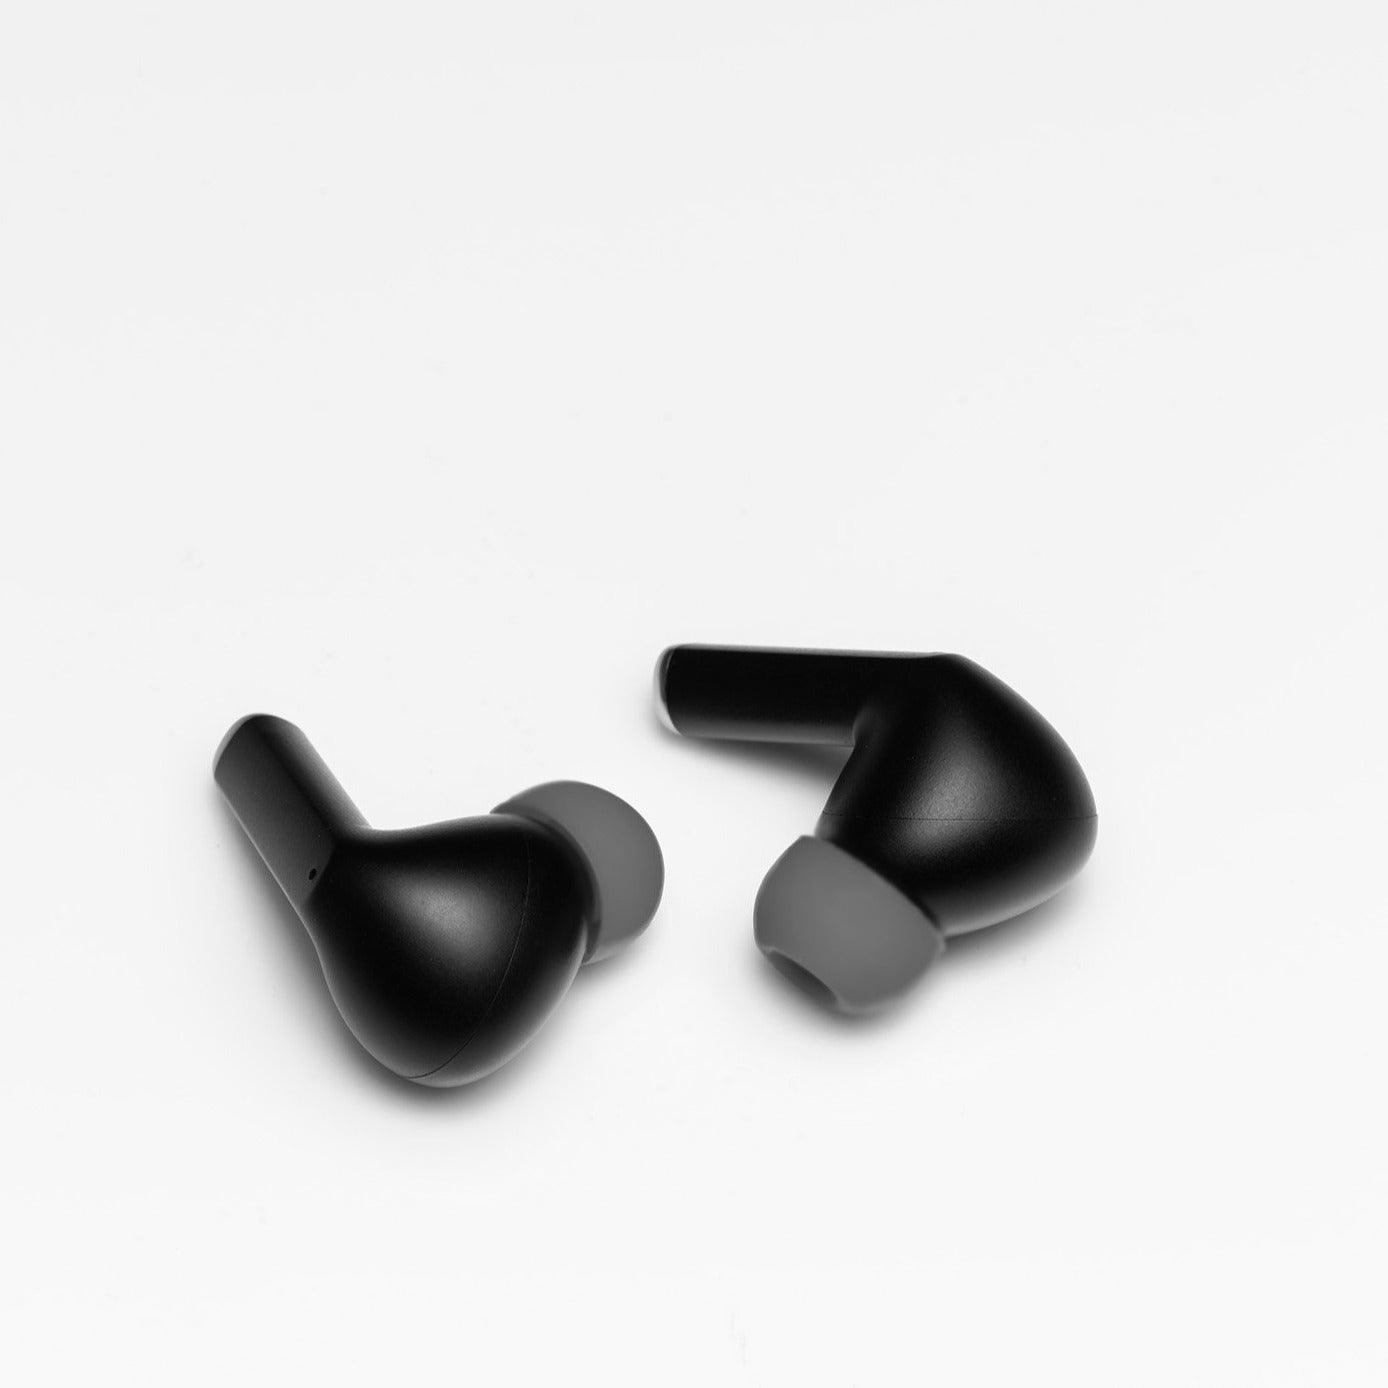 TWS Kopfhörer 20, BLAUPUNKT Bluetooth In-ear Bluetooth Schwarz In-Ear | Kopfhörer